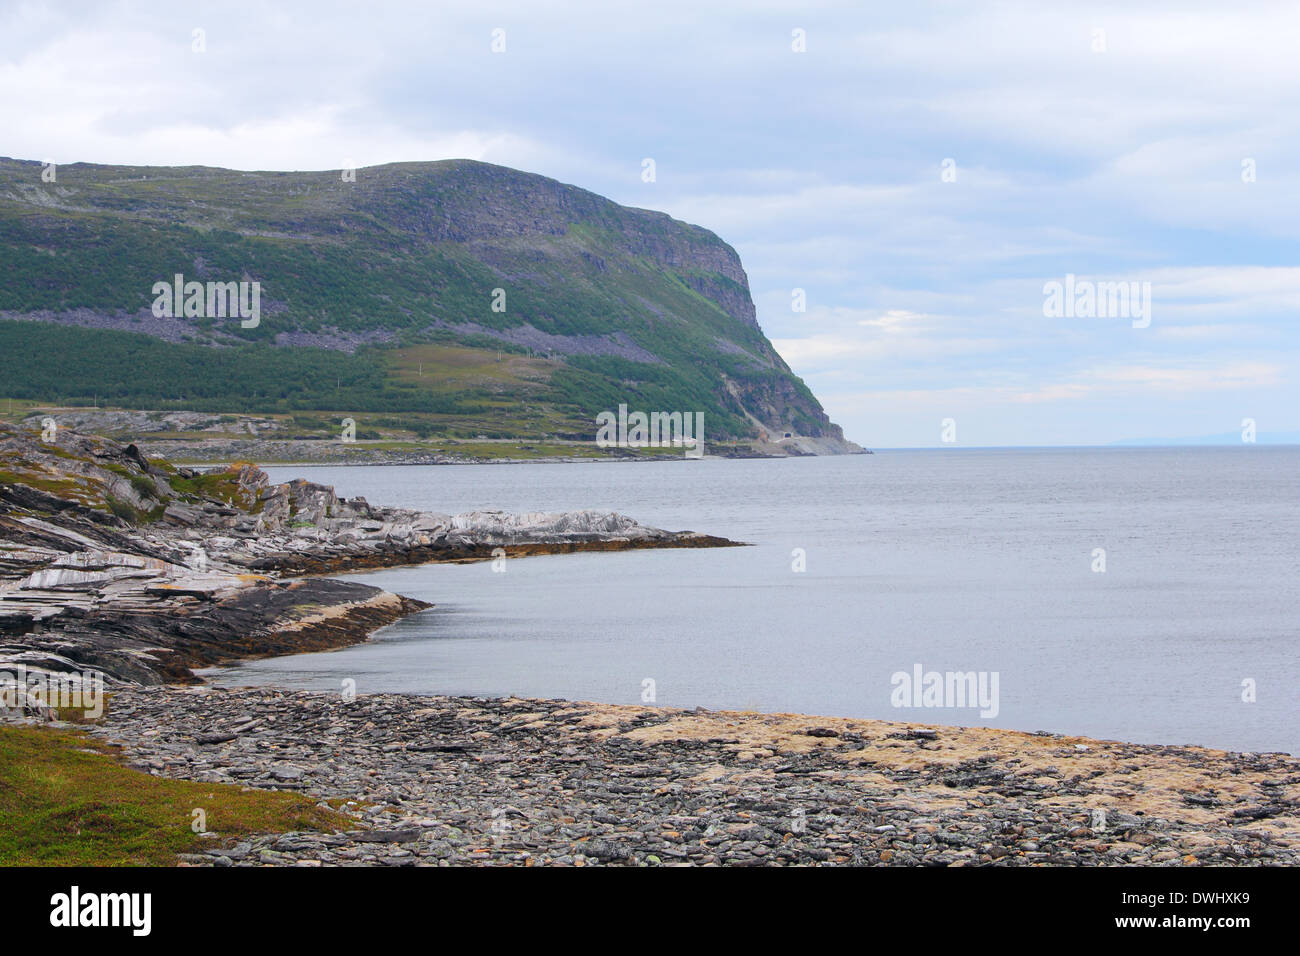 Paysage norvégien du nord avec les fjords, montagnes et sur la rive avec moss Banque D'Images